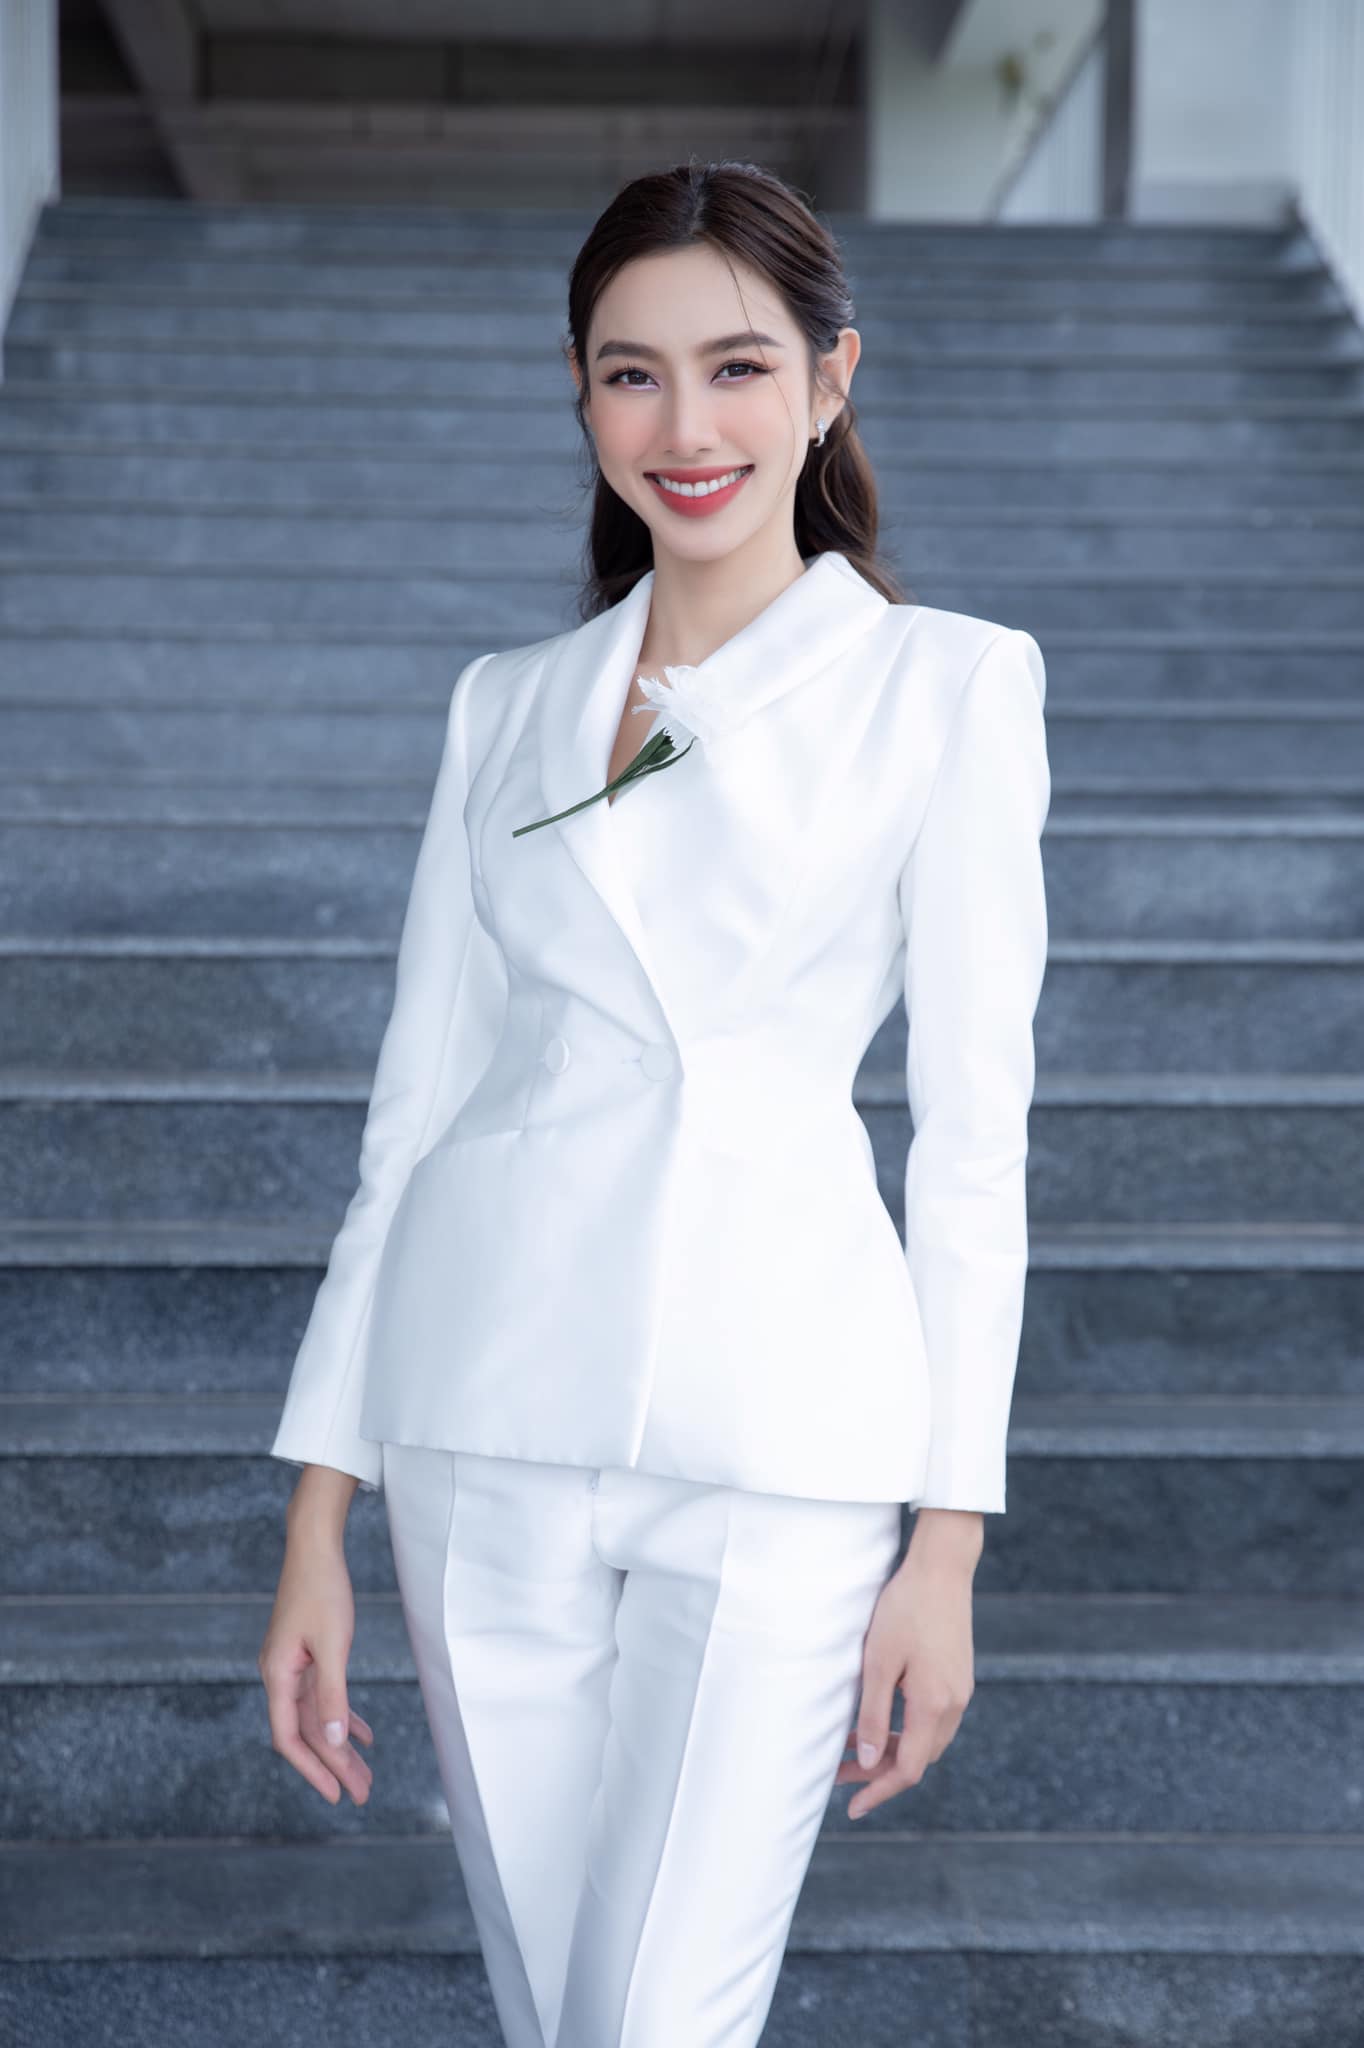 Hoa hậu Thùy Tiên nhận kết quả dương tính với Covid-19 sau khi đáp sân bay Thái Lan - Ảnh 2